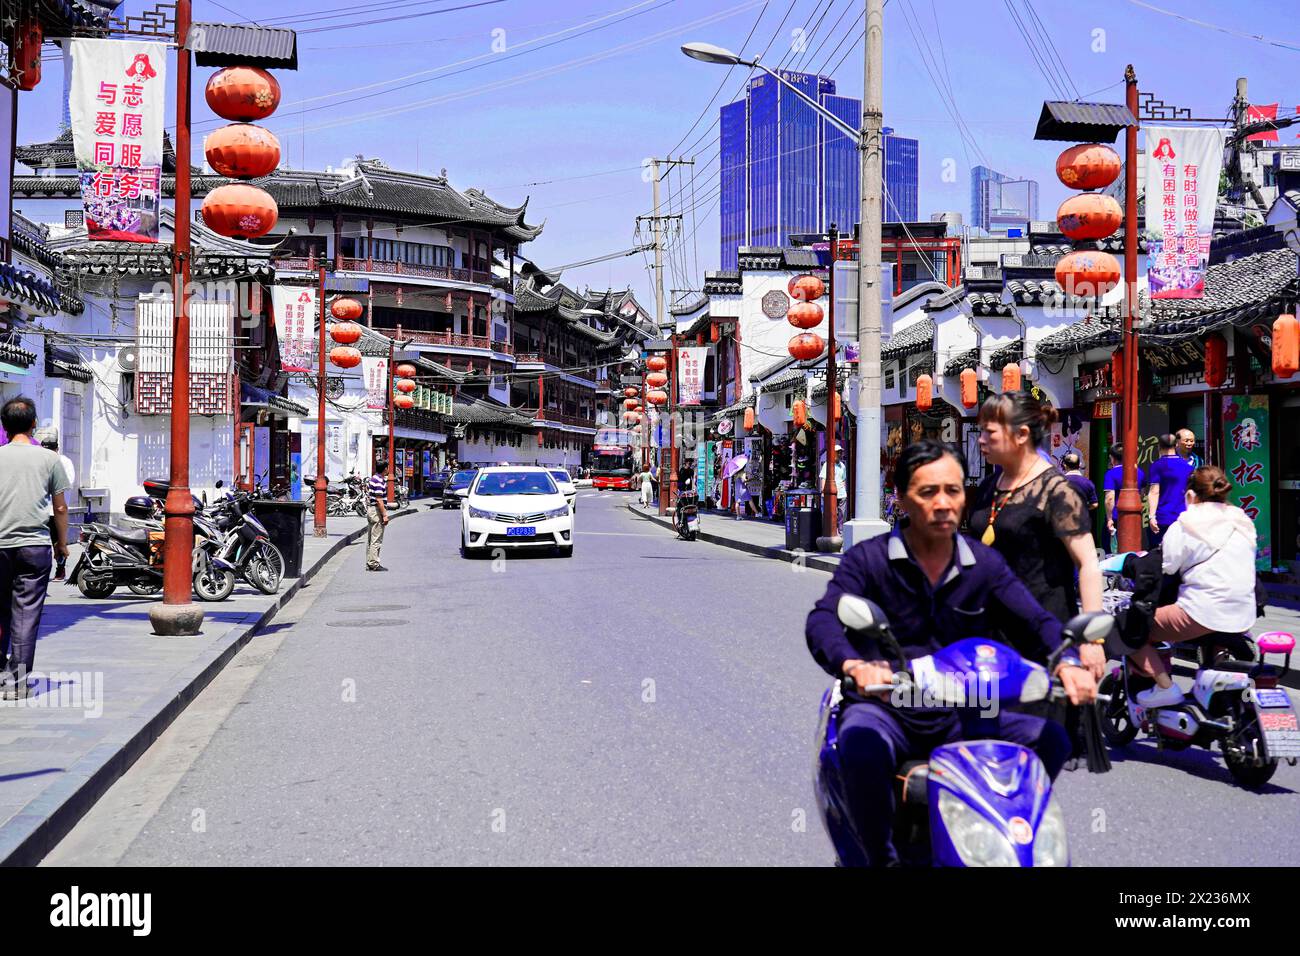 Passeggia attraverso Shanghai per raggiungere le attrazioni turistiche, Shanghai, Cina, Asia, la vivace strada cittadina con la tradizionale architettura cinese e uno scooter Foto Stock